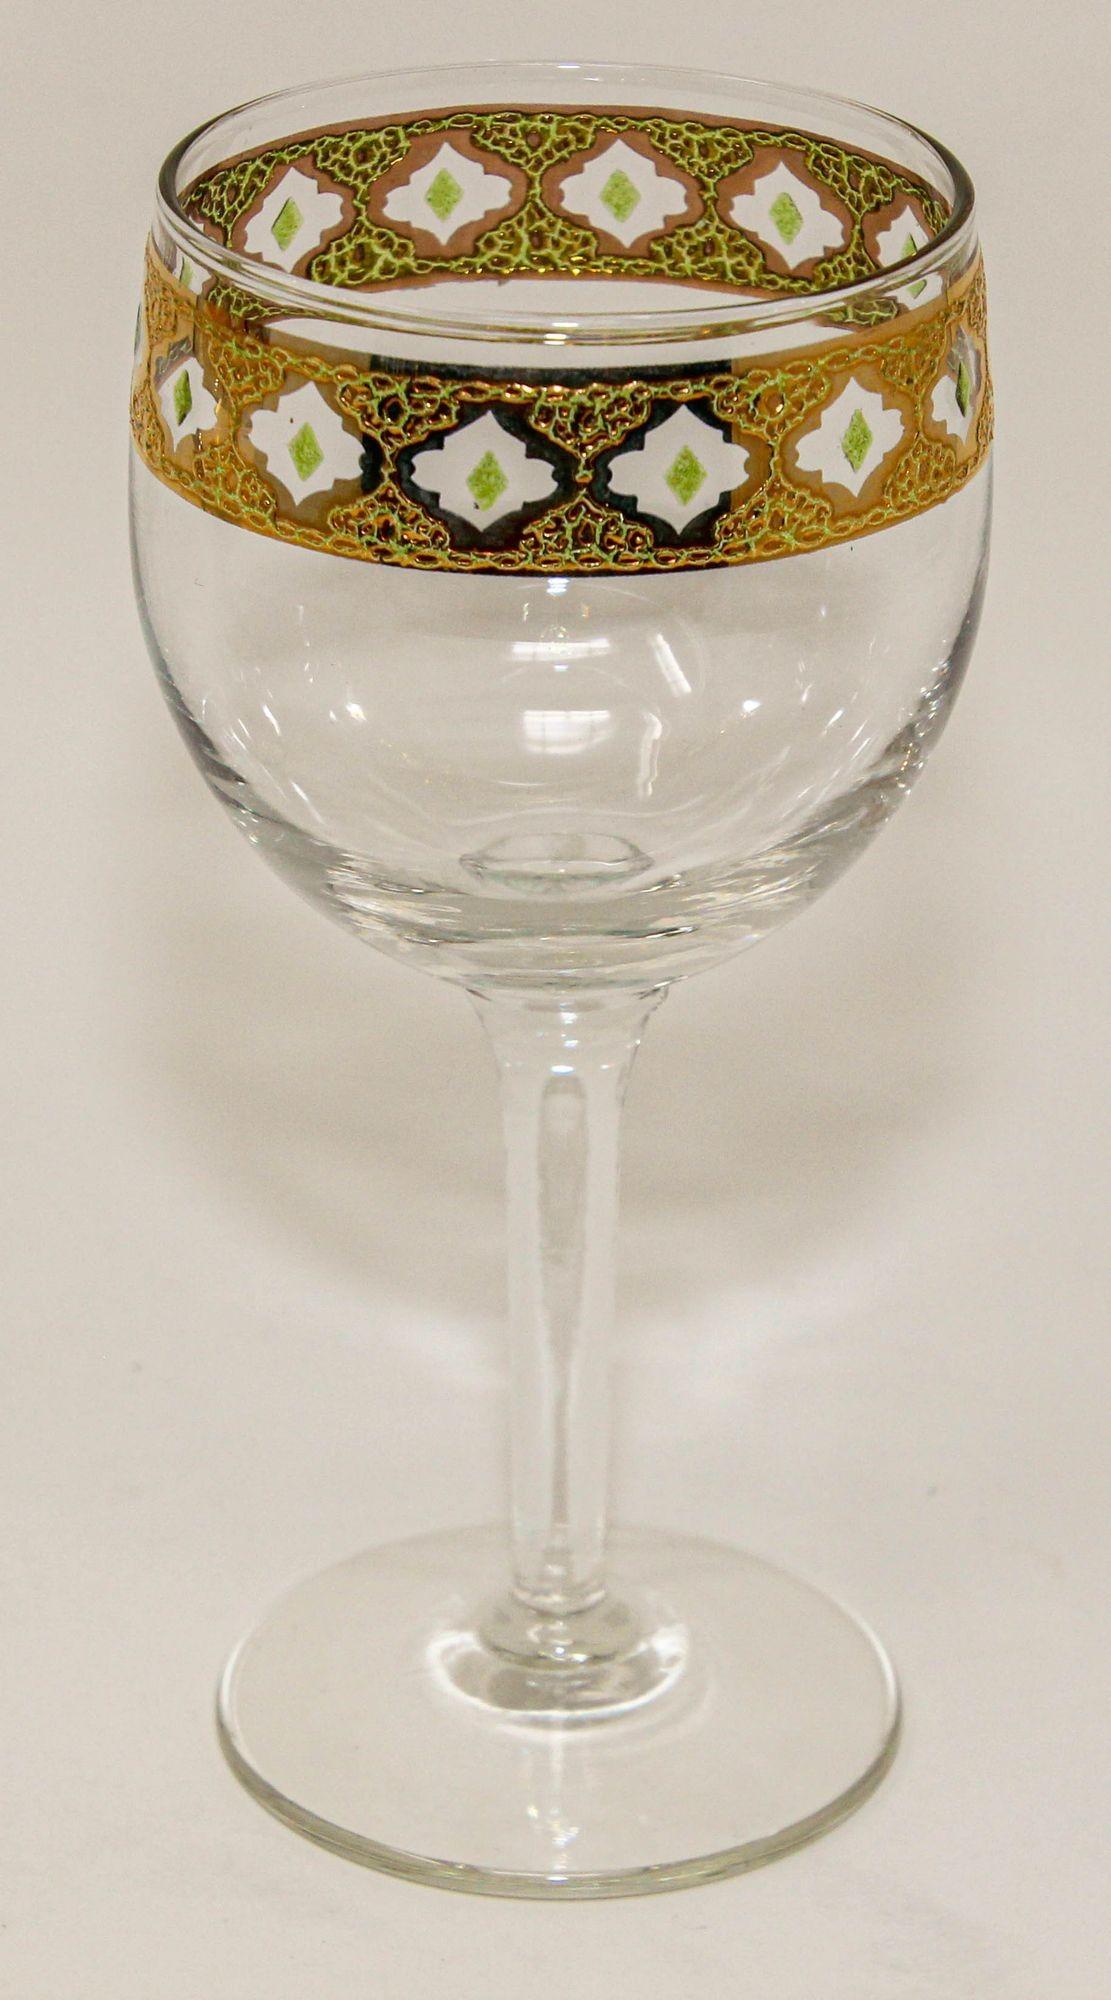 gold rimmed wine glasses vintage